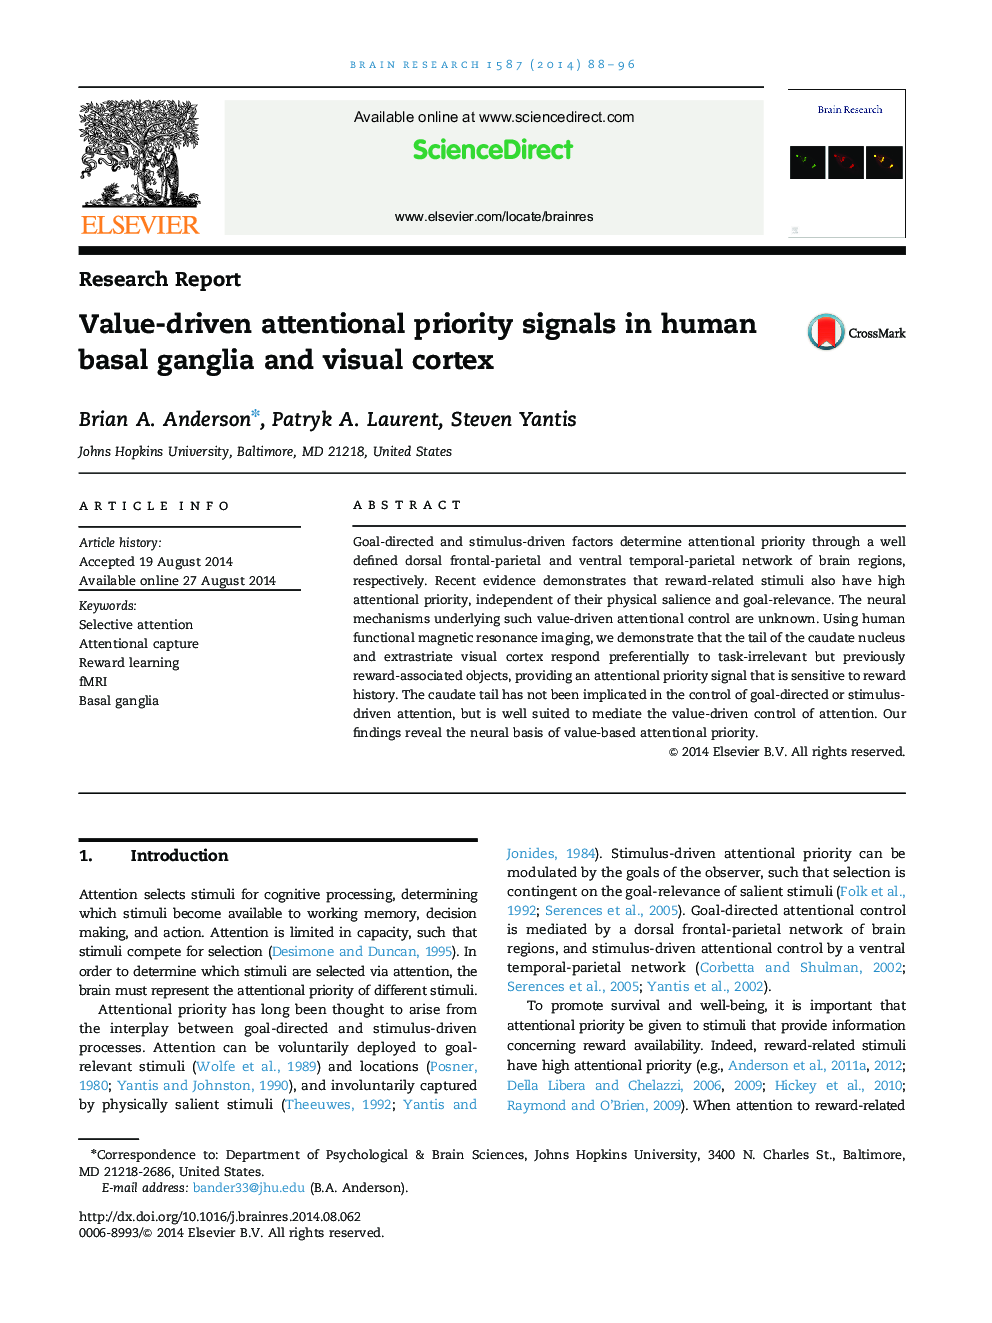 گزارش تحقیق سیگنال های اولویت توجهی به محور اصلی در گانگلیون های پایه انسان و قشر بینایی 